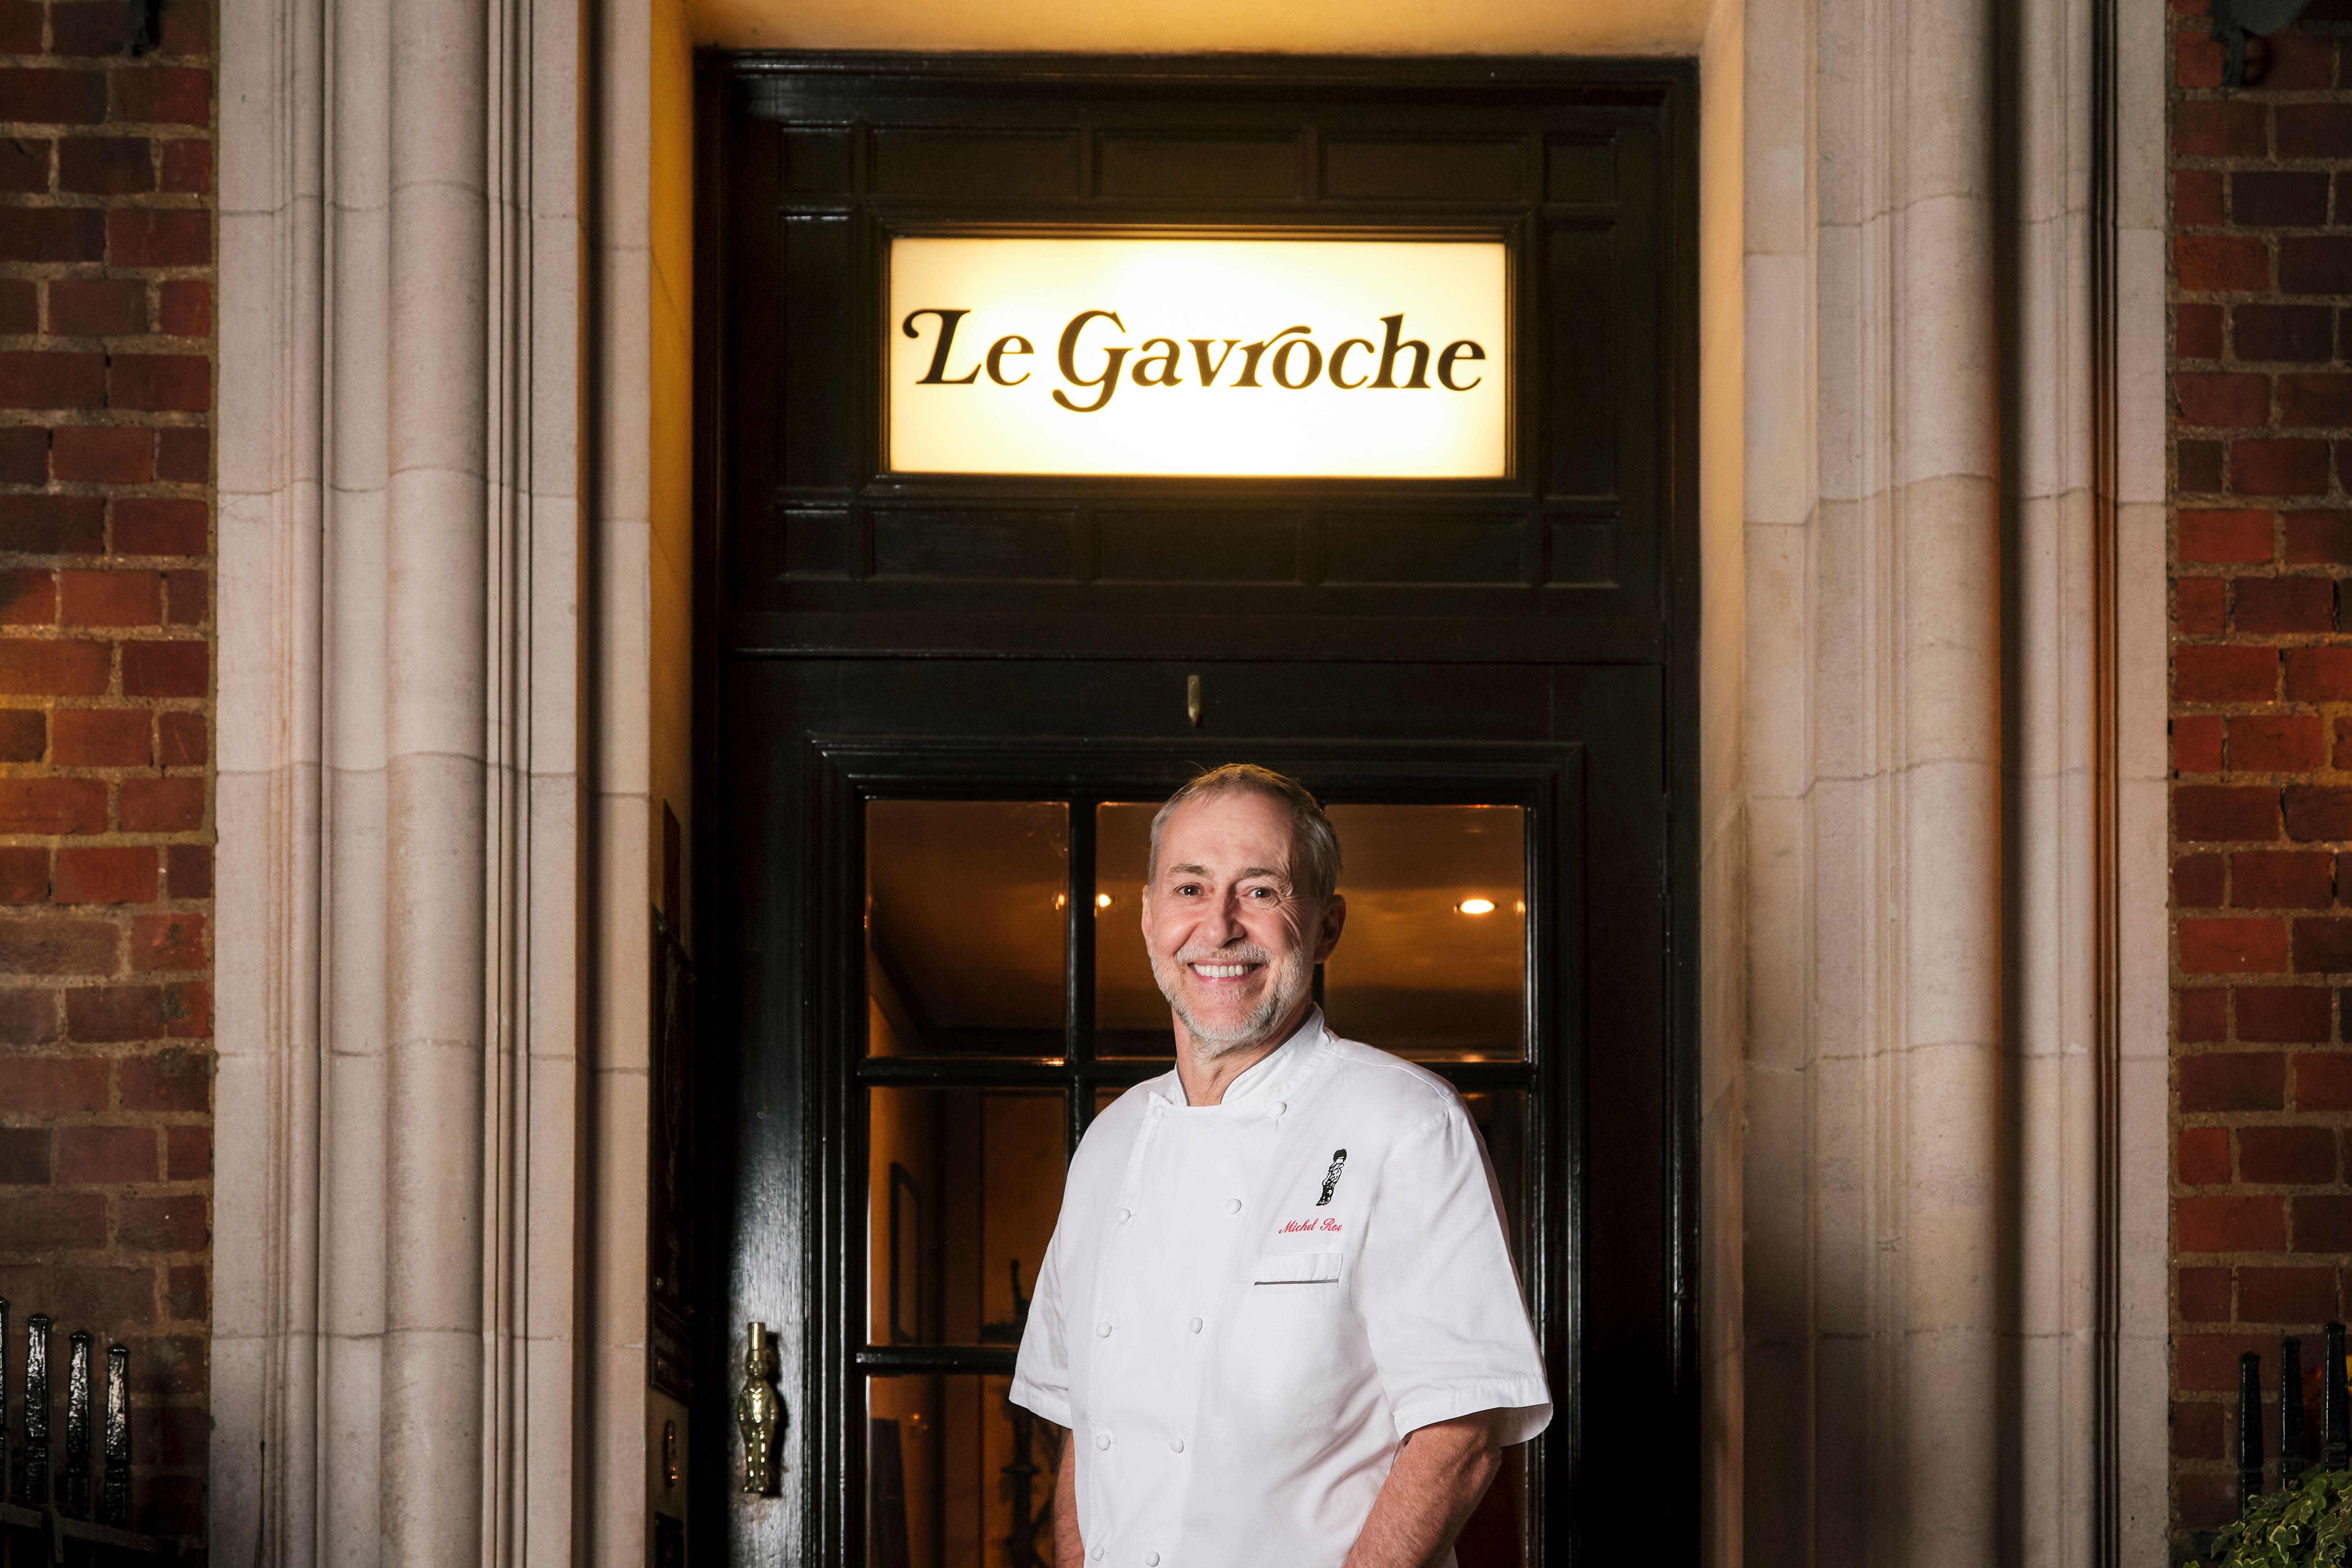 Michel Roux in the doorway of Le Gavroche